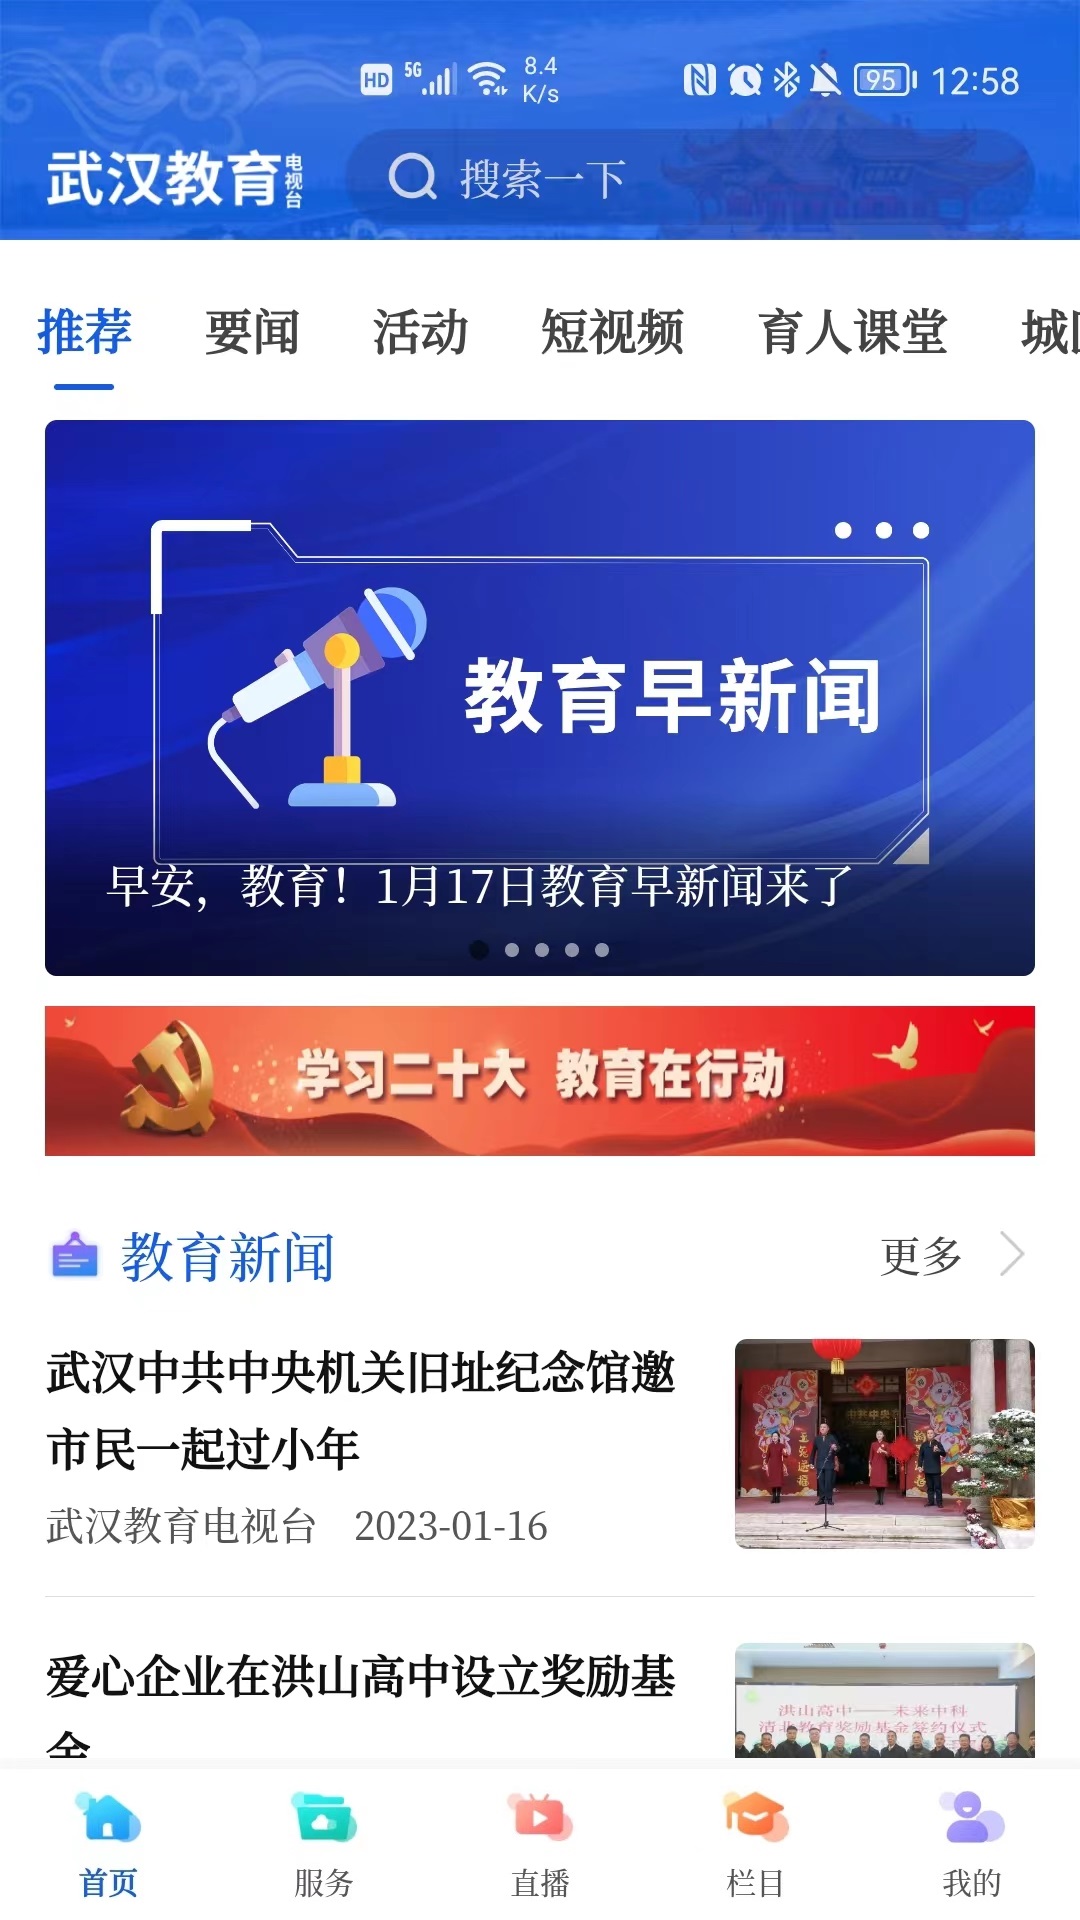 武汉教育电视台1